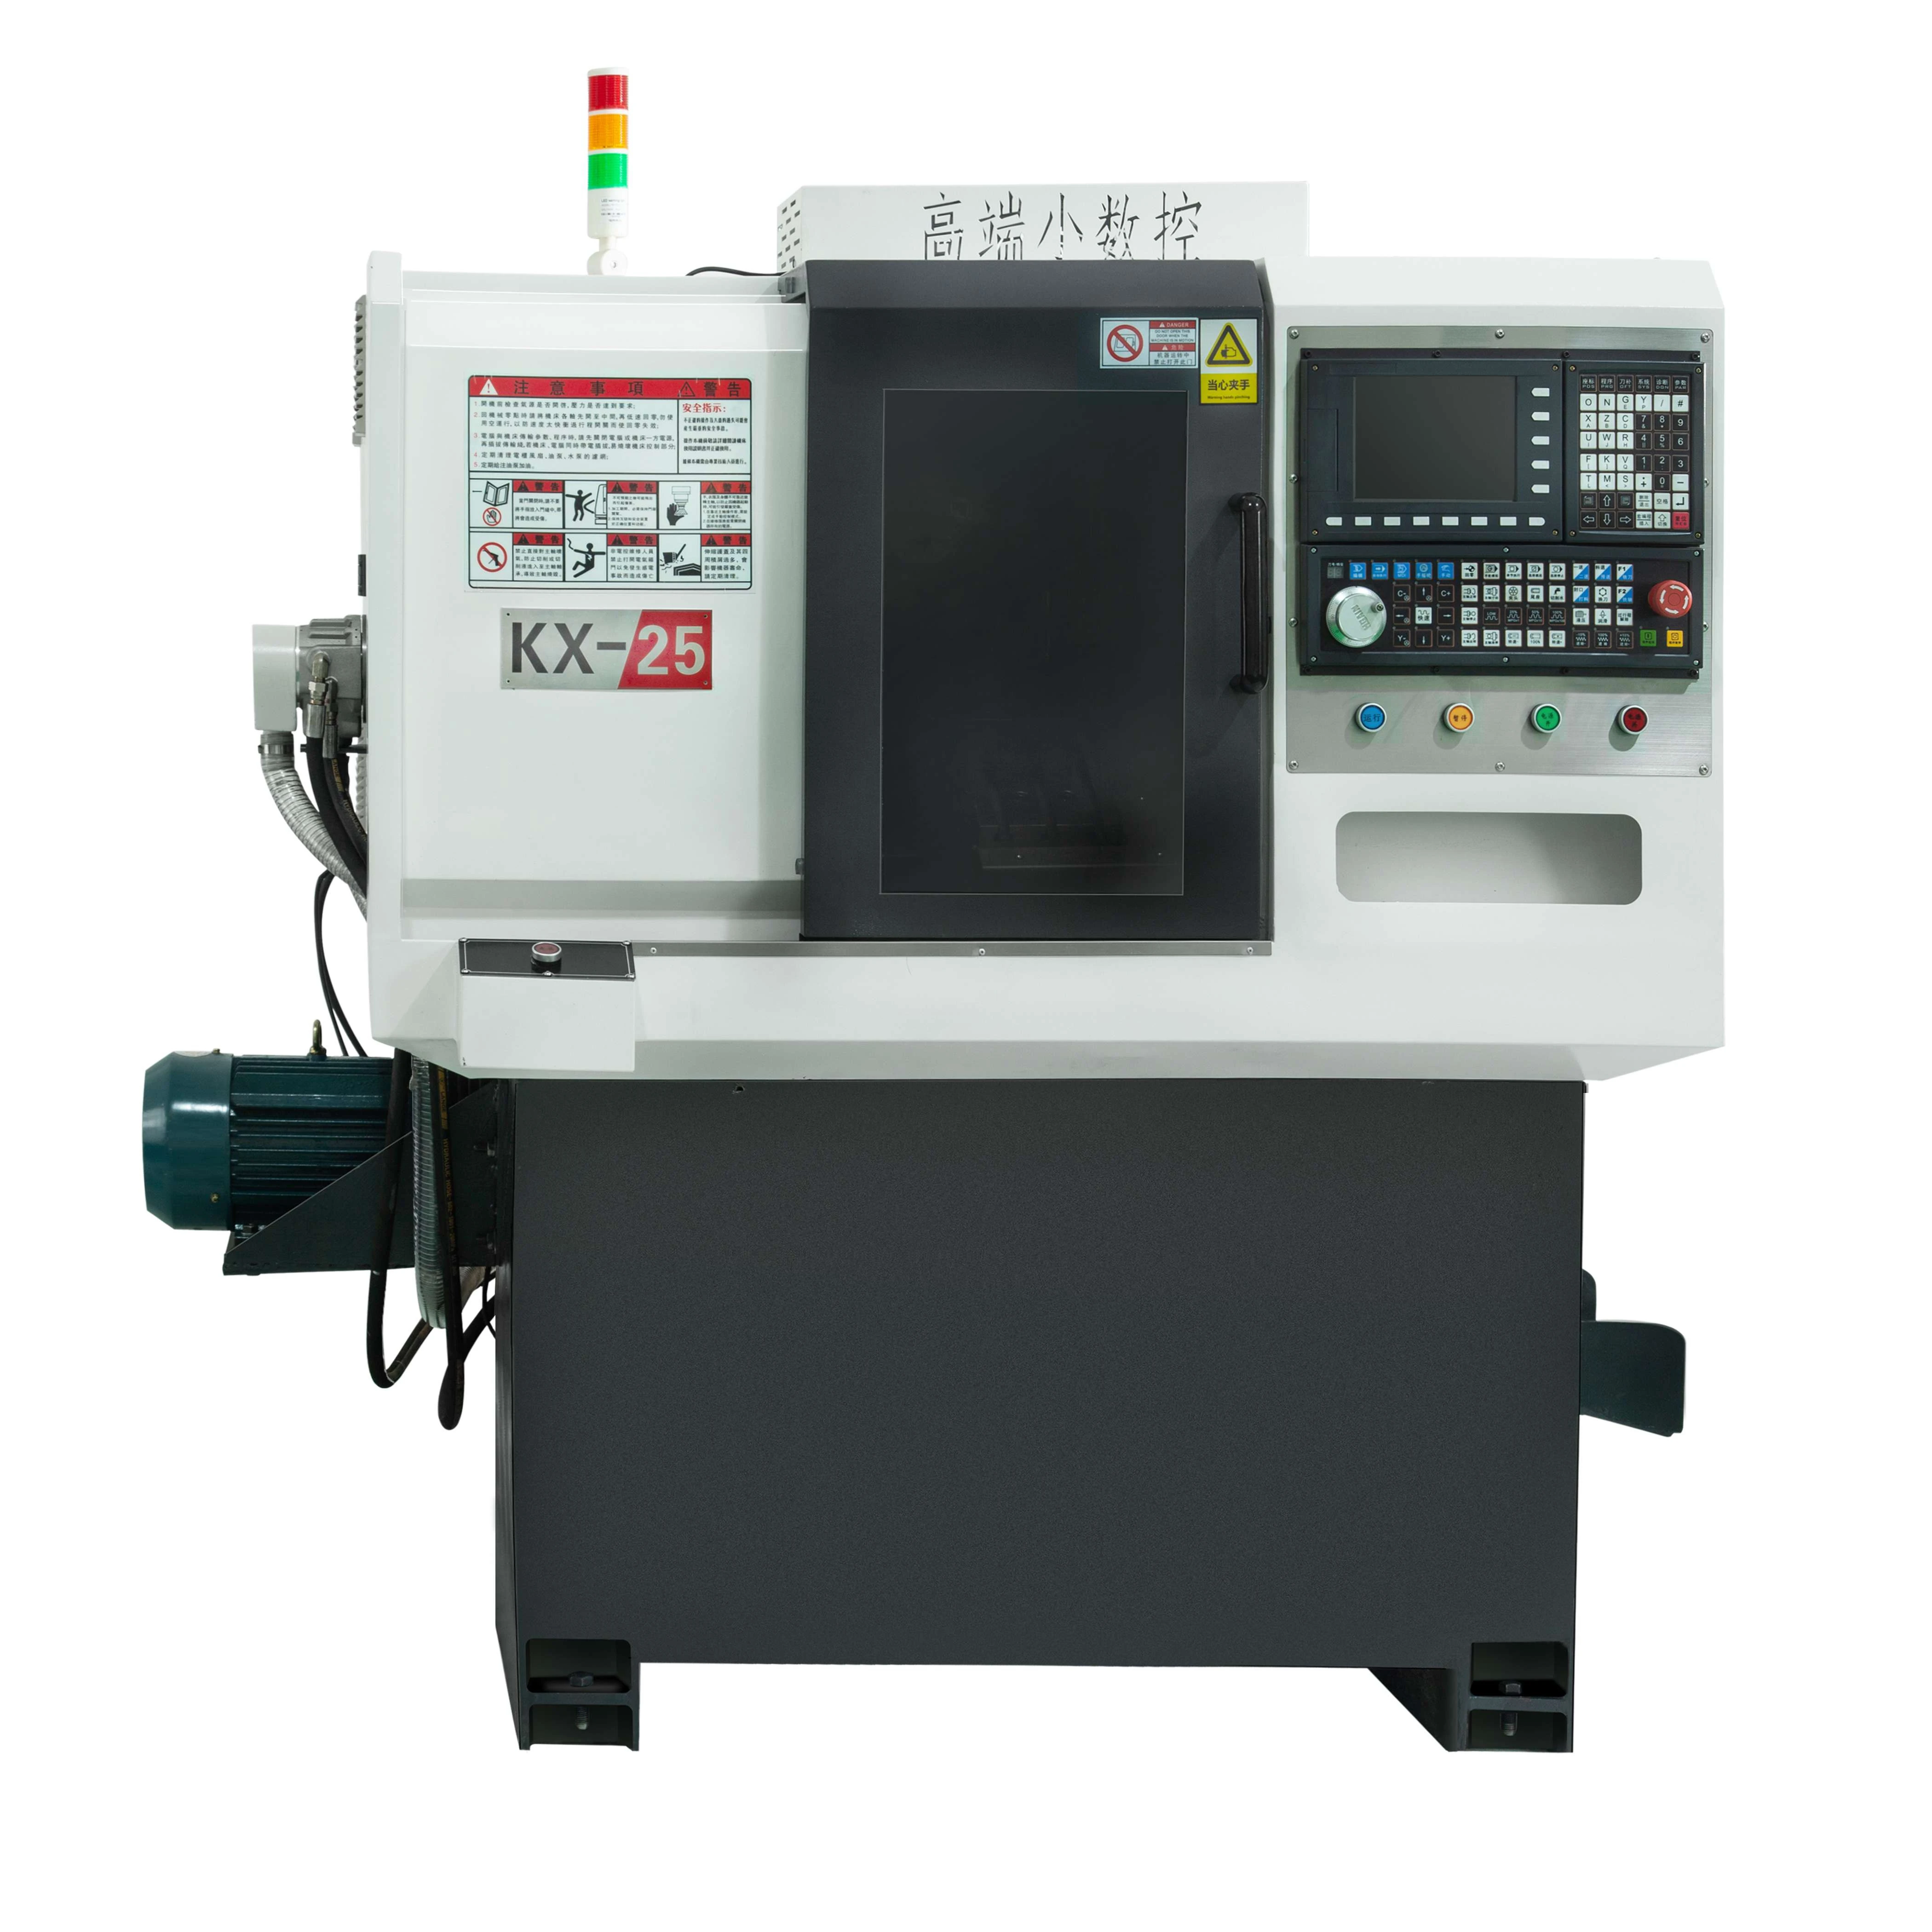 CNC lathe machine small automatic turning GuangDong KX25-R500 lathe and milling machine combo